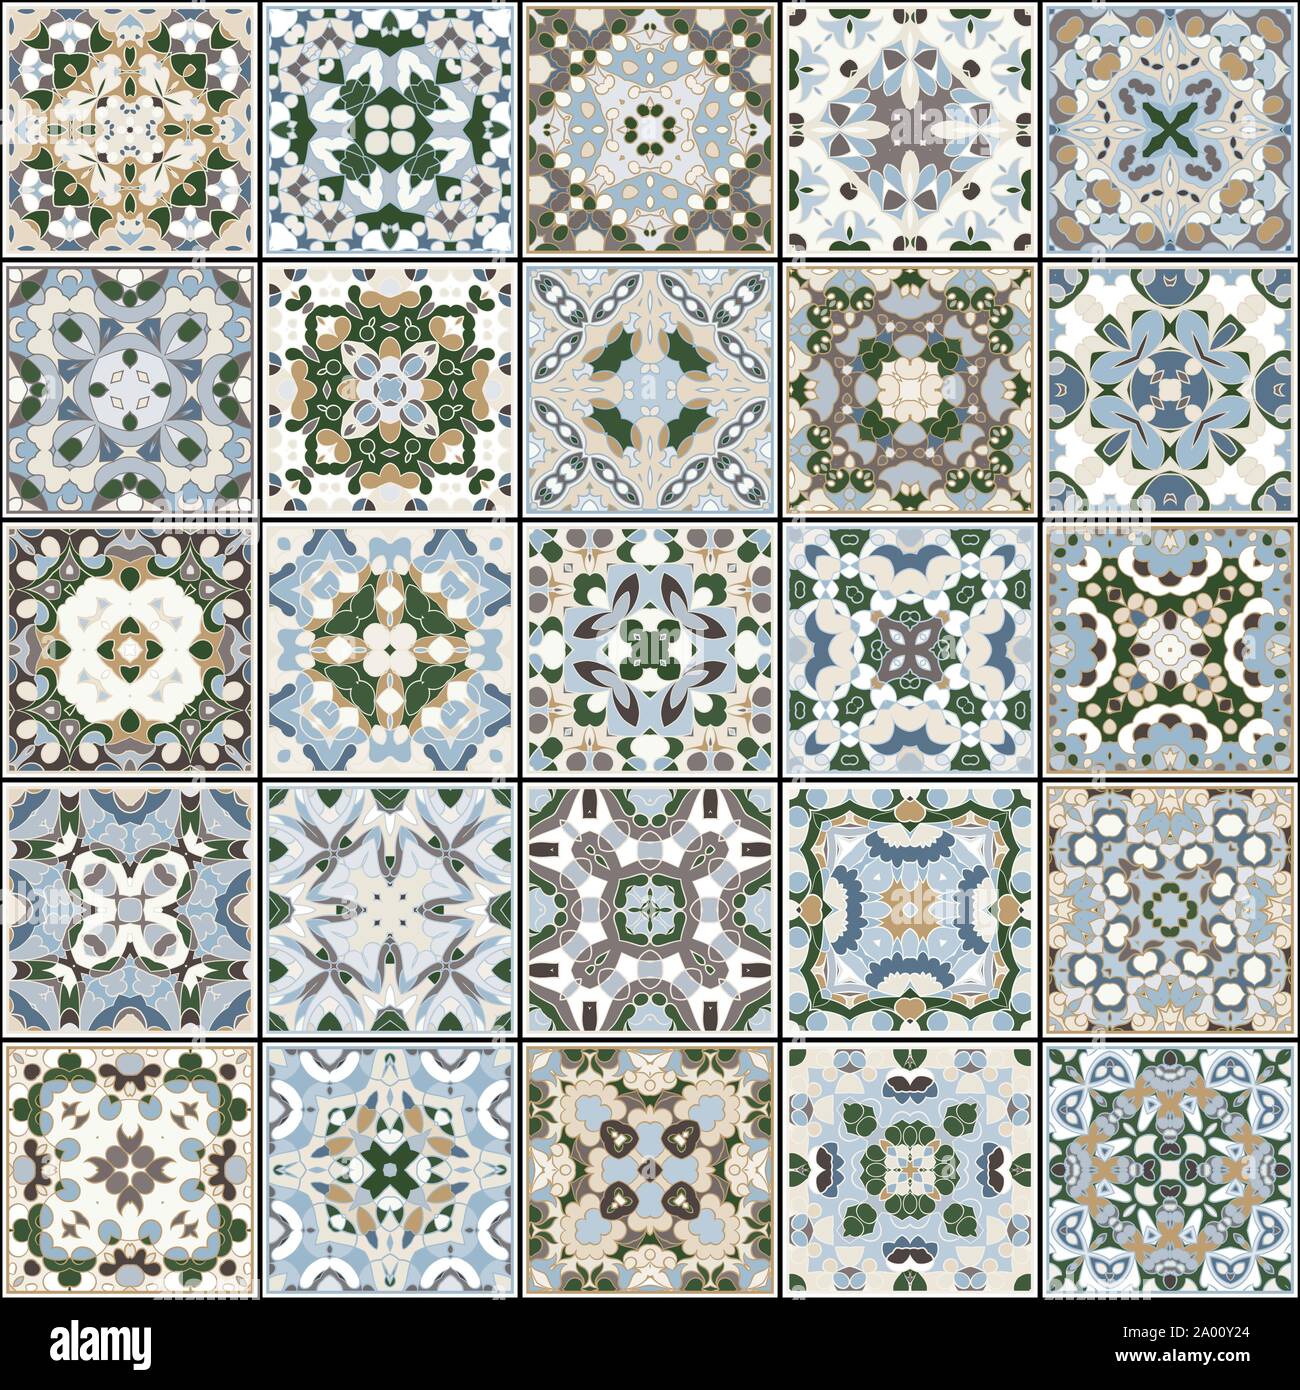 Eine Sammlung von Keramikfliesen in Blau und Beige retro Farben. Eine Reihe von quadratischen Muster im ethnischen Stil. Vector Illustration. Stock Vektor